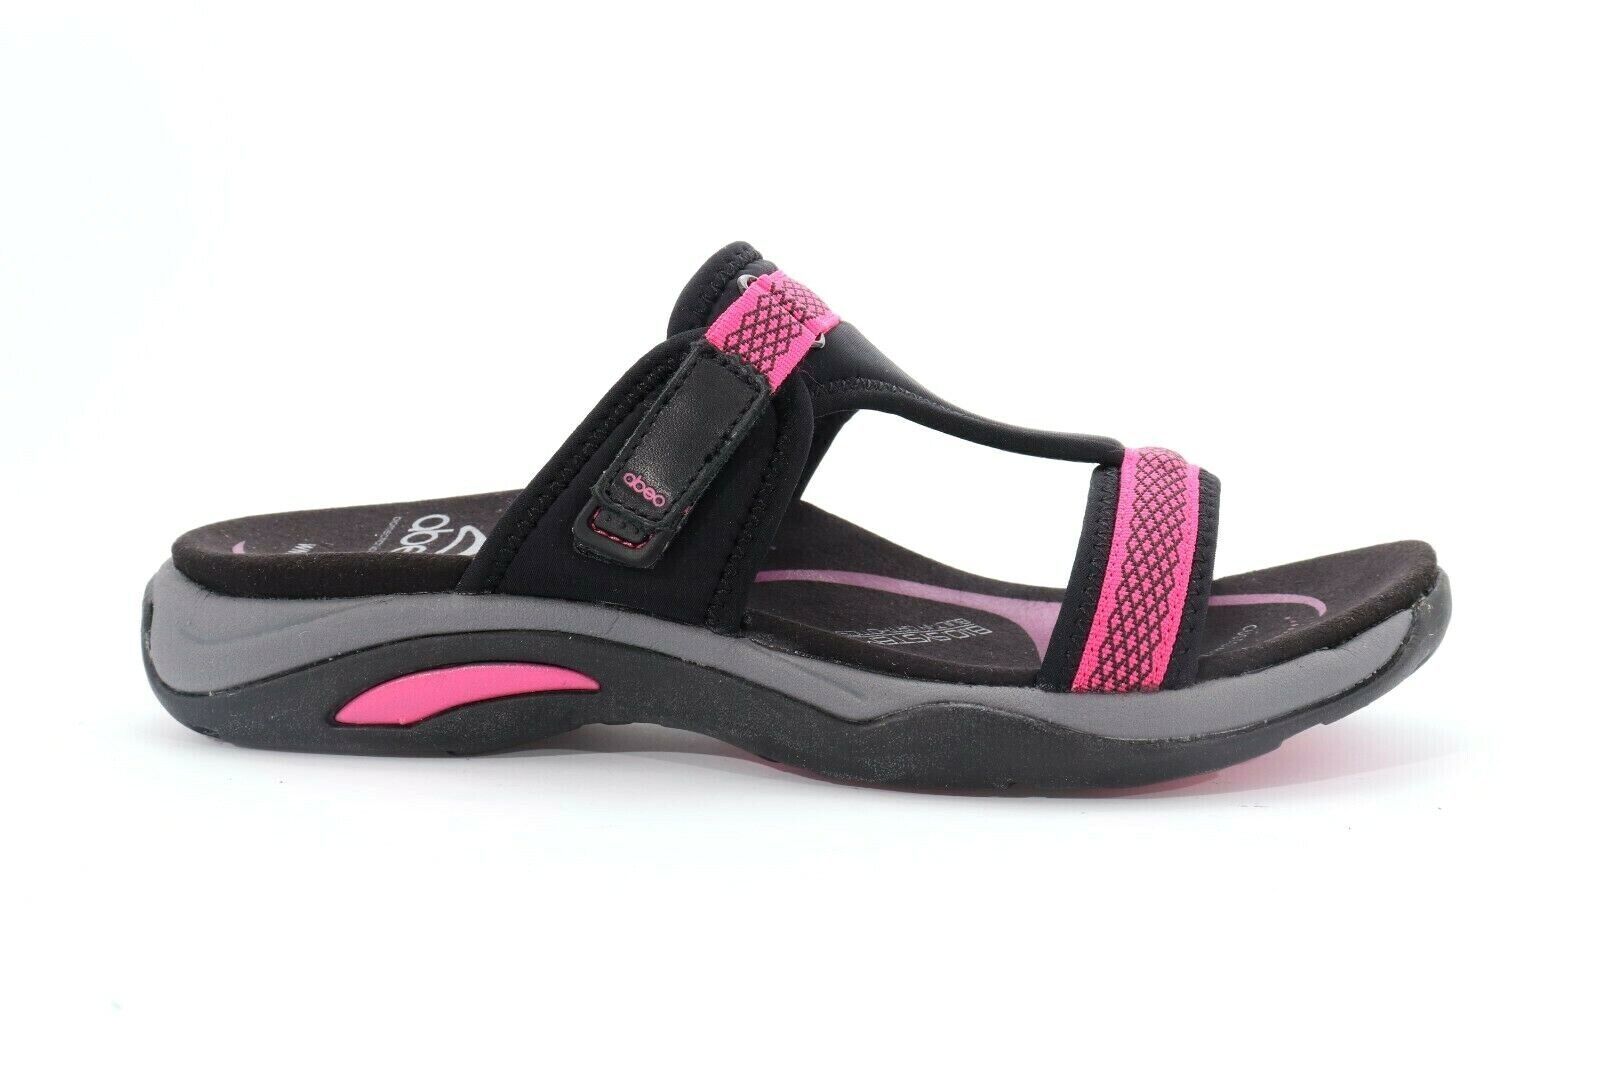 Abeo Carmel Slides Slip On Sandals Pink Black Size US 11 Neutral Footbed($)